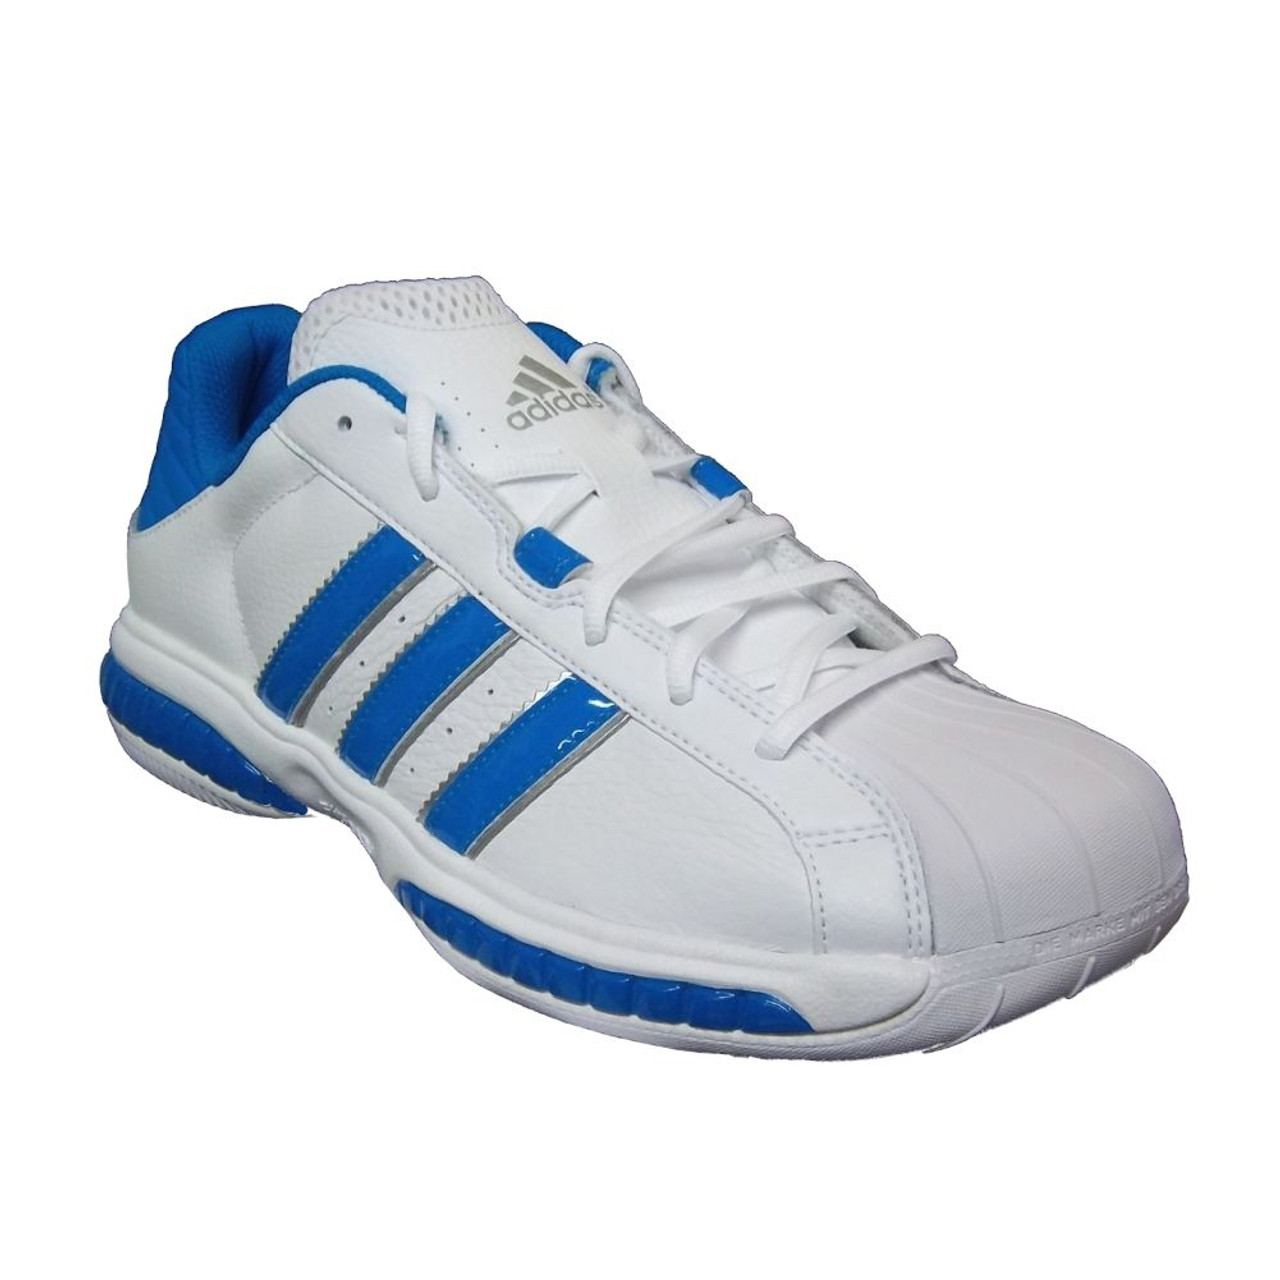 simpático Torrente moral Adidas AS SMU Superstar 3G Speed White/Blue - | Discount Adidas Men's  Athletic Shoes & More - Shoolu.com | Shoolu.com